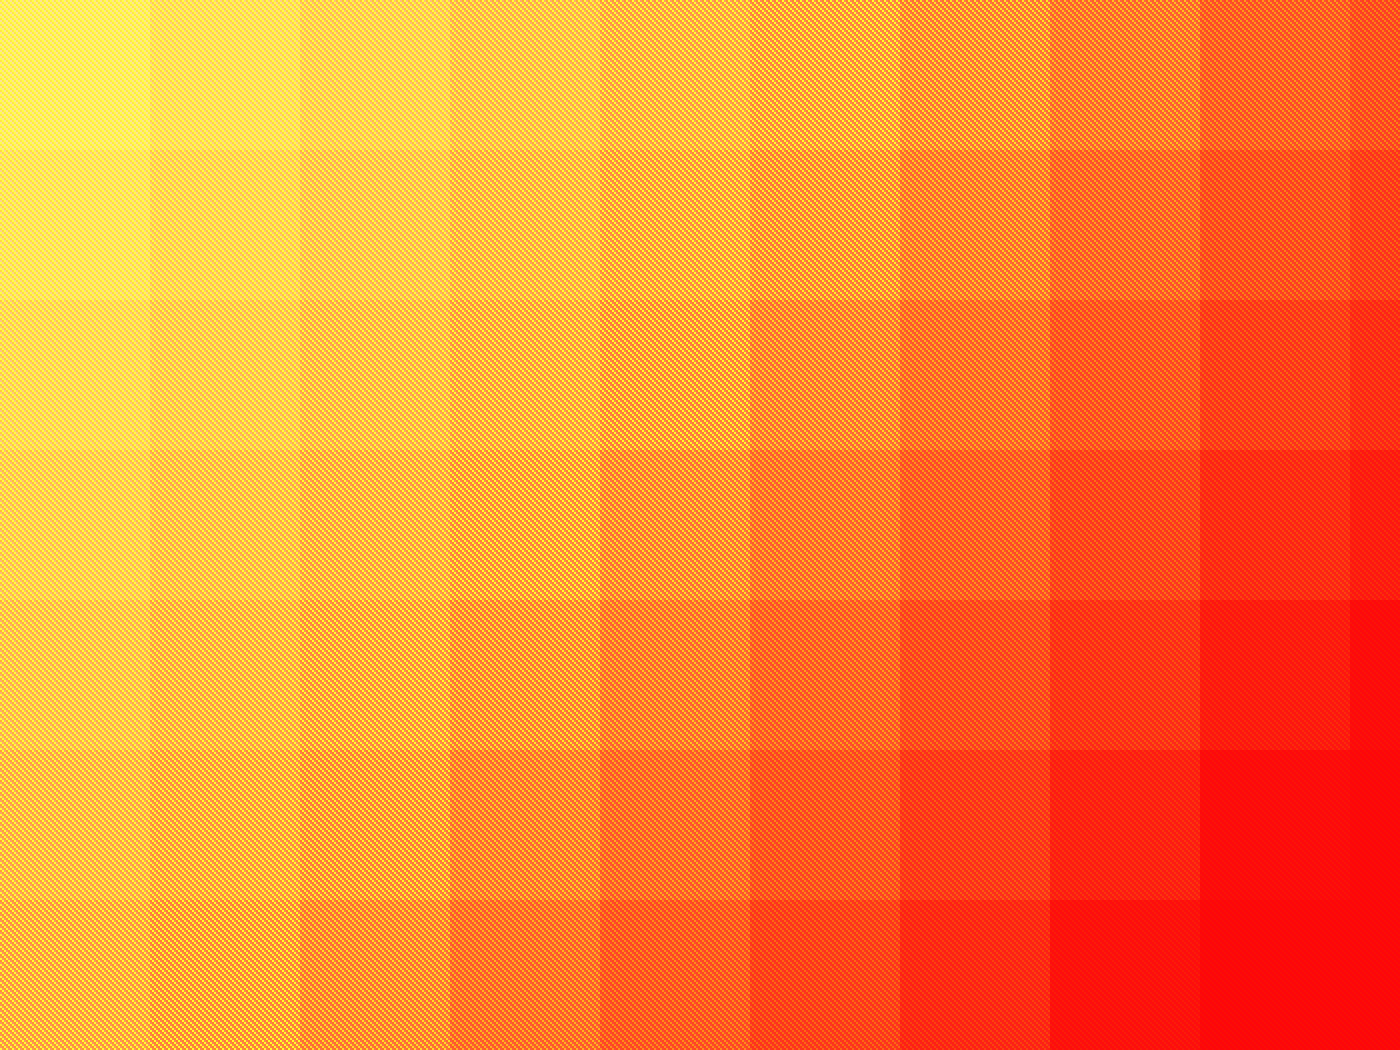 fond d'écran laranja,plaid,orange,modèle,jaune,rouge